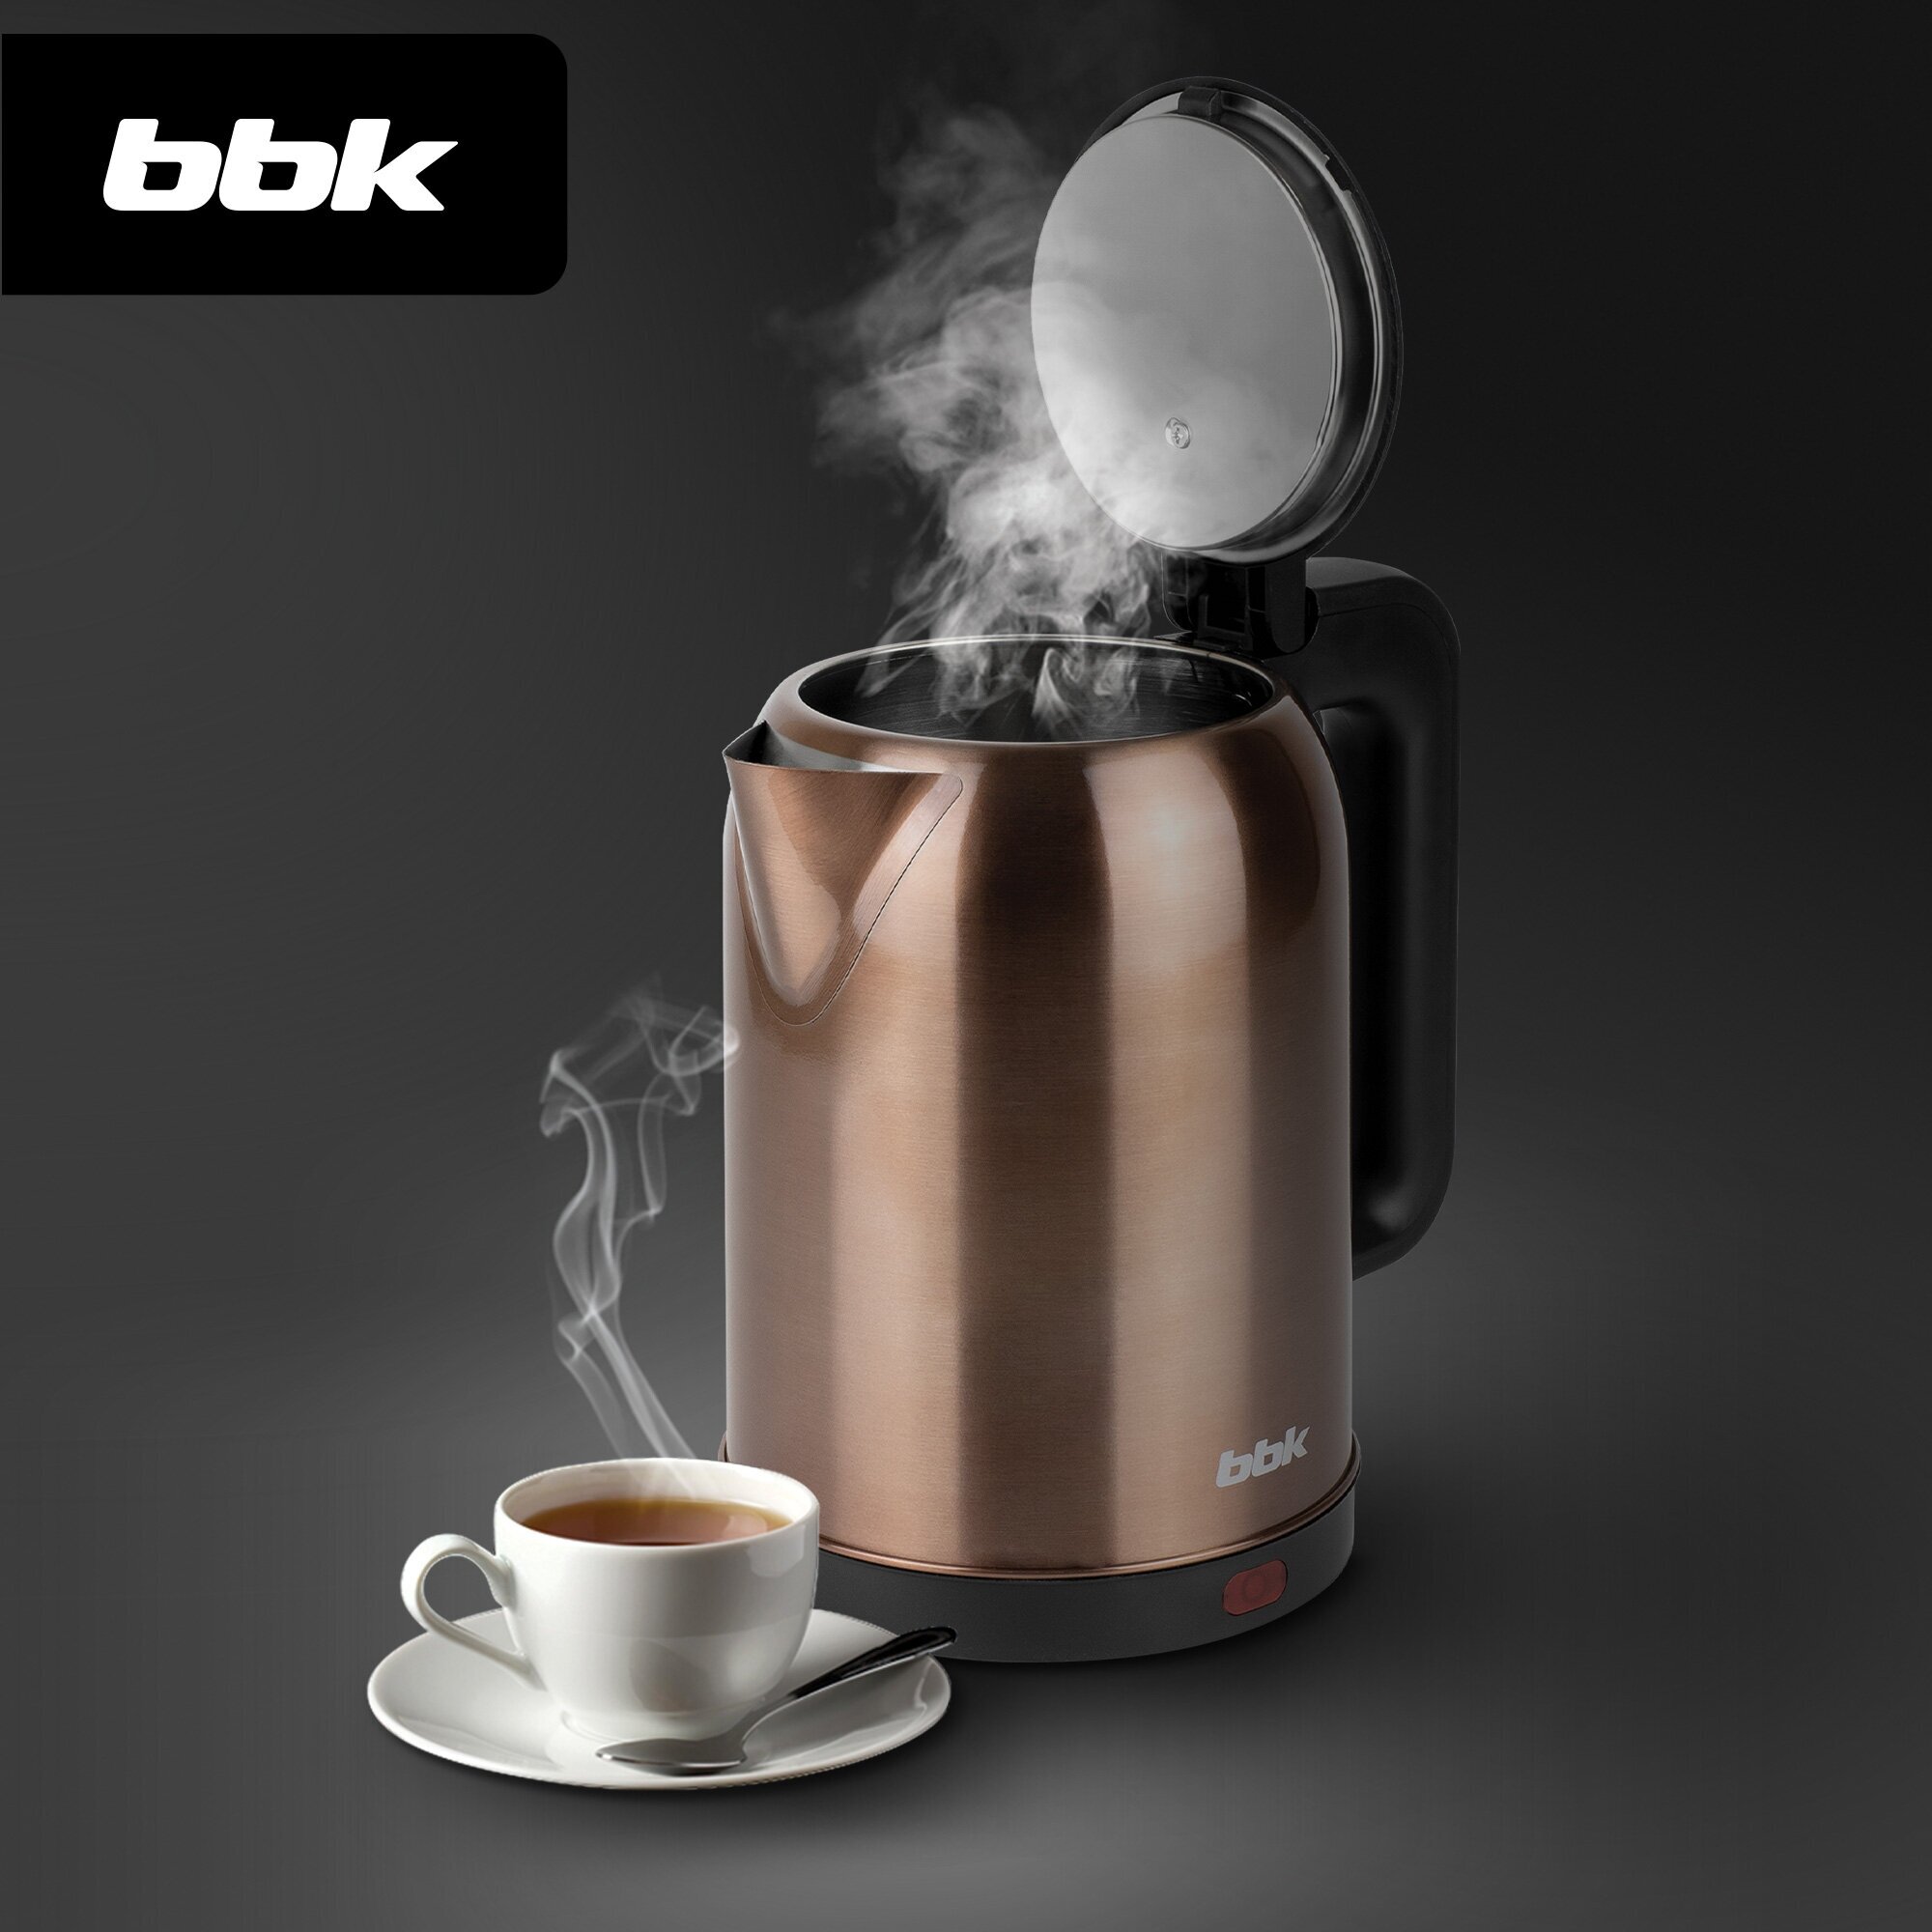 Чайник электрический BBK EK1809S медный/черный, объем 1.8 л, мощность 1800-2000 Вт